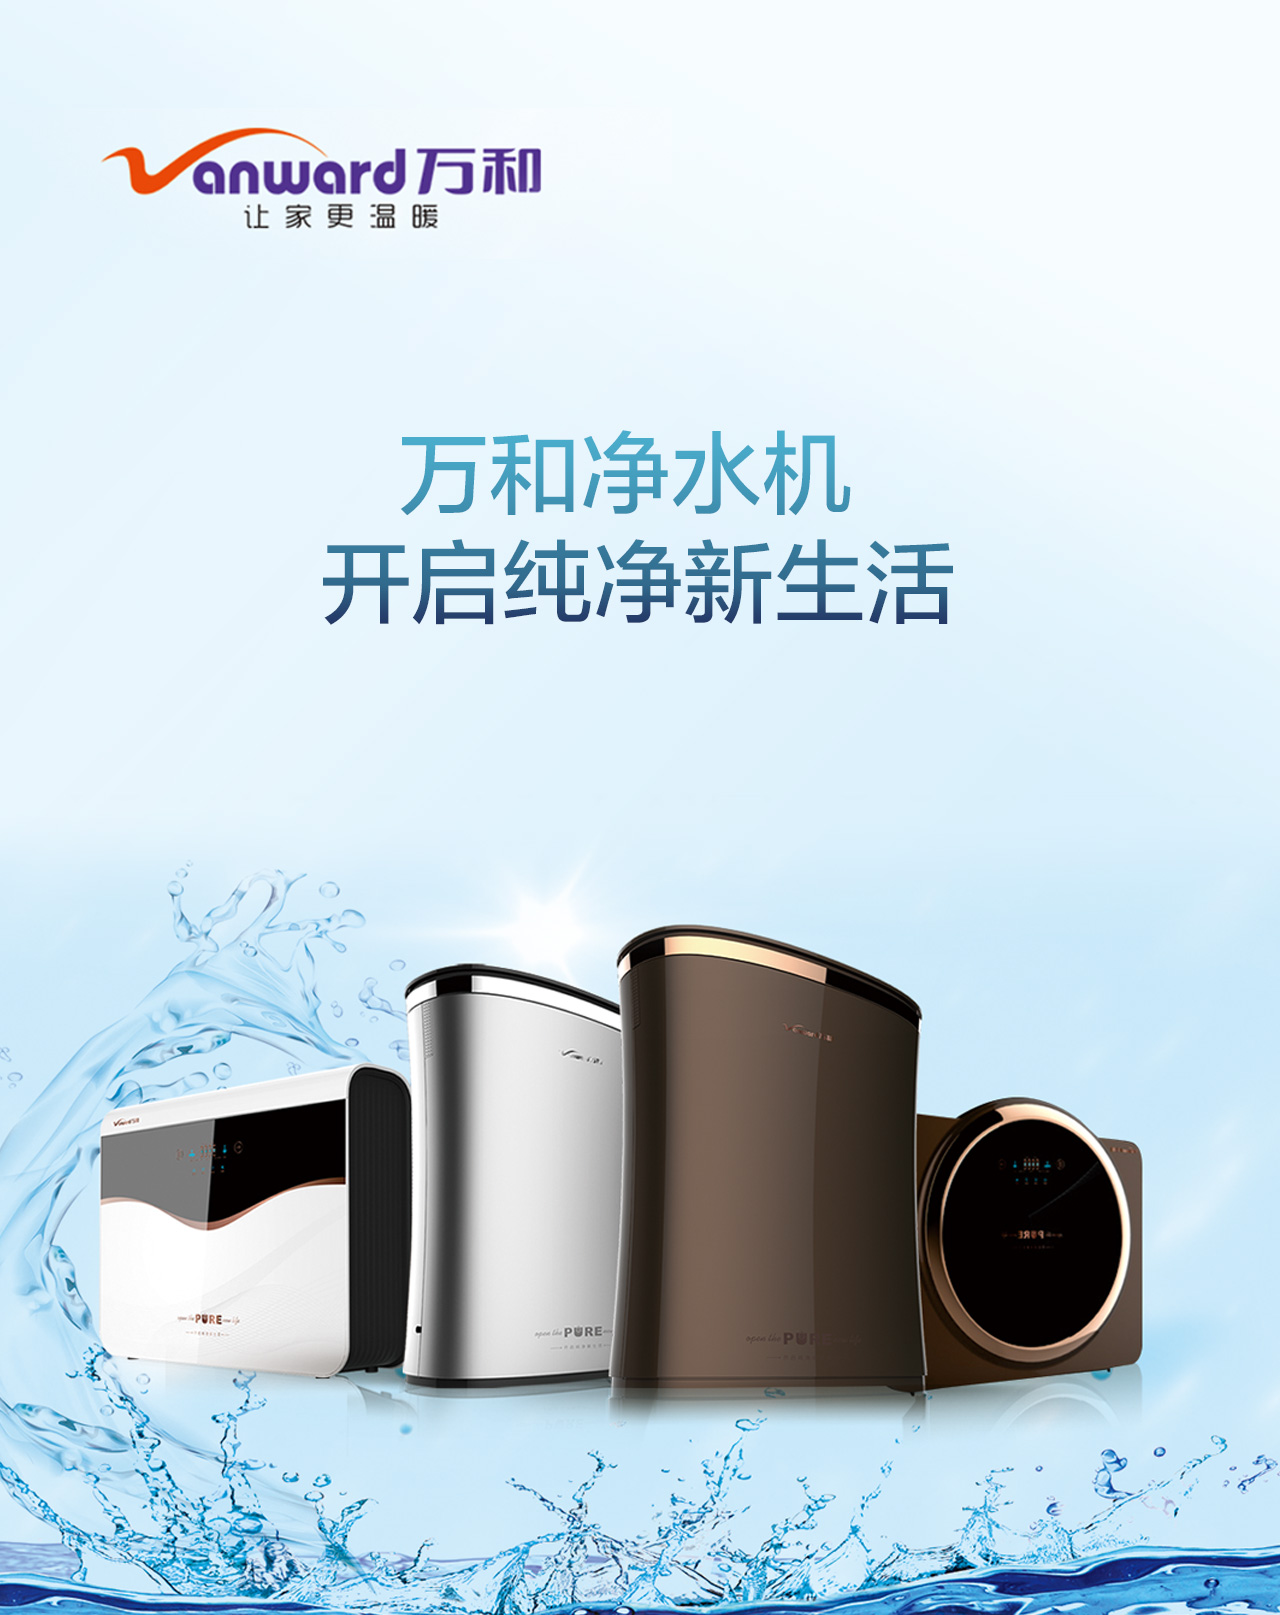 中山汉风广告设计公司手机版banner6